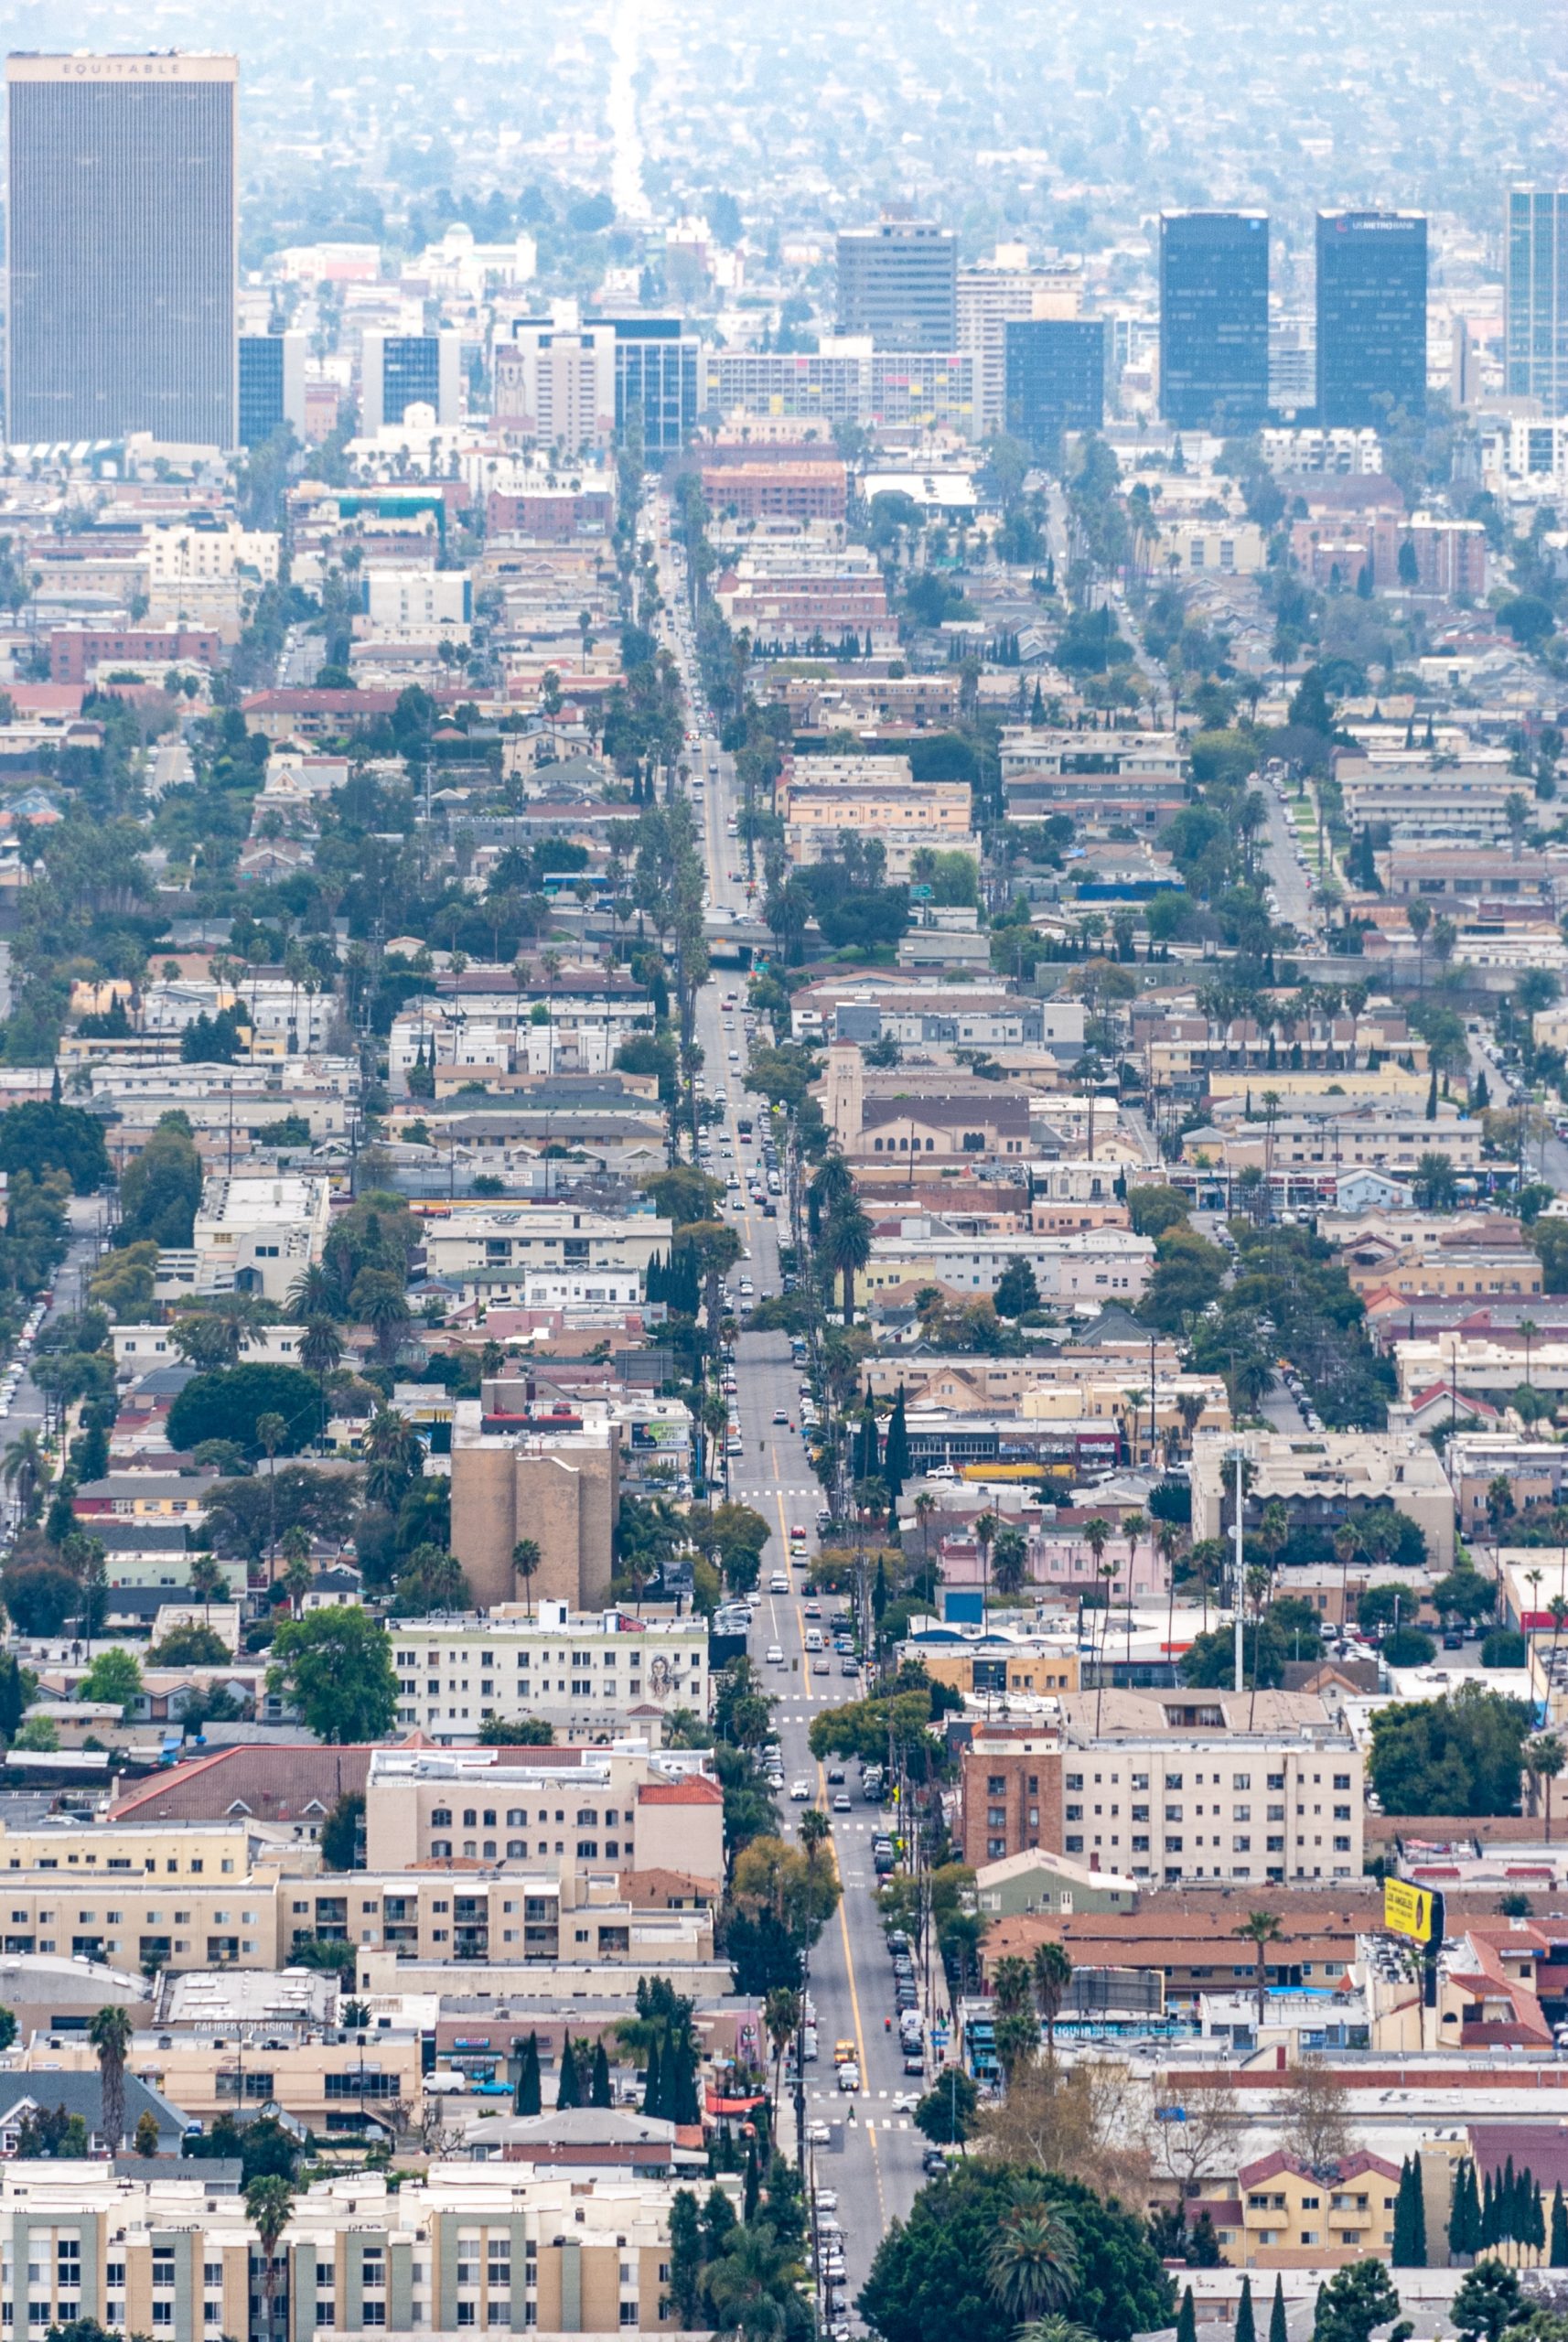 Ofertas de inmuebles más recientes y económicas en Los Angeles